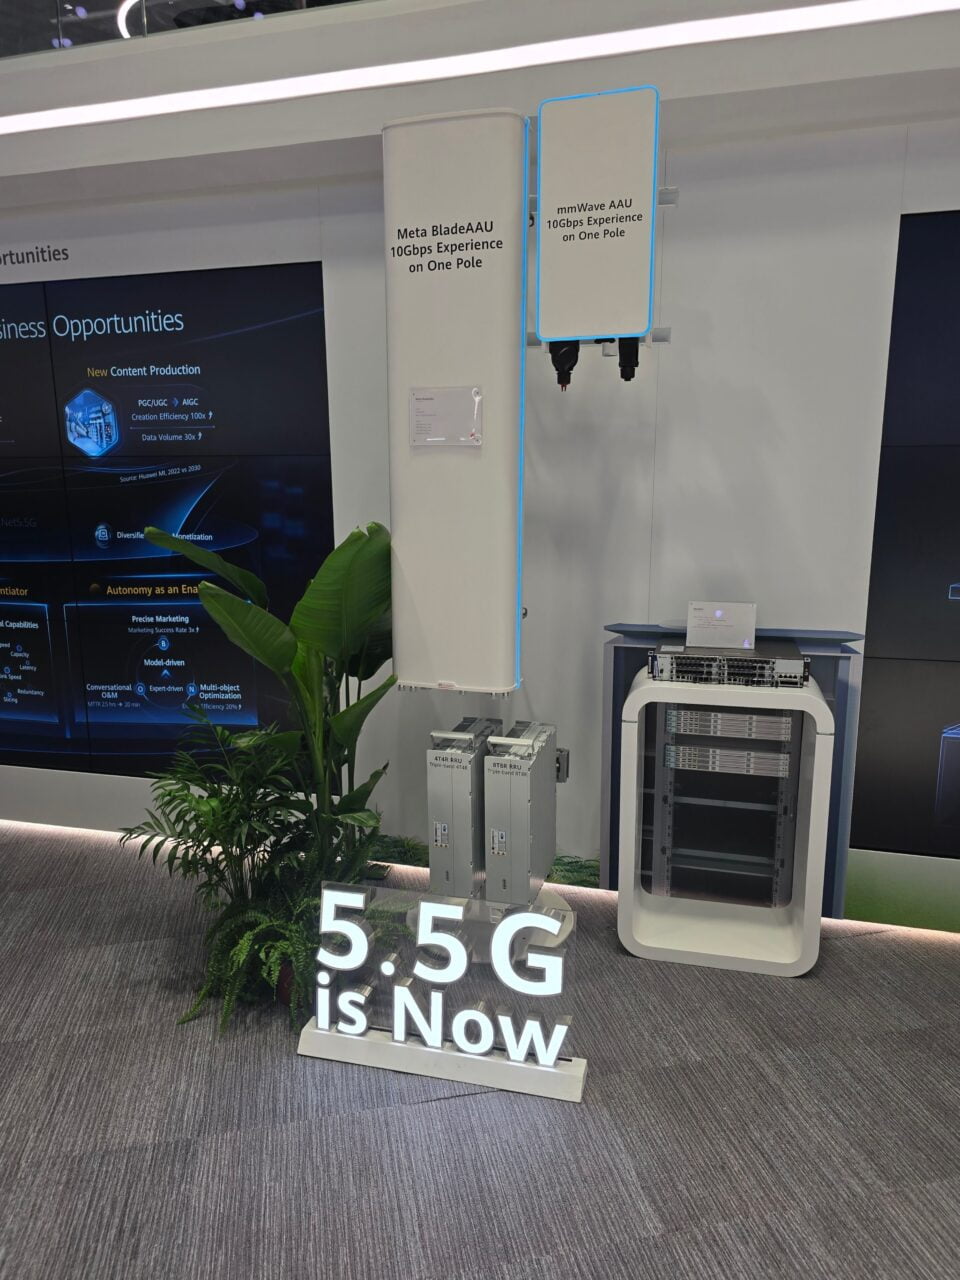 Stoisko Huawei 5.5G na targach MWC 2024 z urządzeniami technologicznymi, w tym urządzenia sieciowe typu AAU, napis "5.5G is NOW" na podłodze oraz reklama "Meta BladeAAU 10Gbps Experience on One Pole". Obok znajduje się mała zielona roślinność.